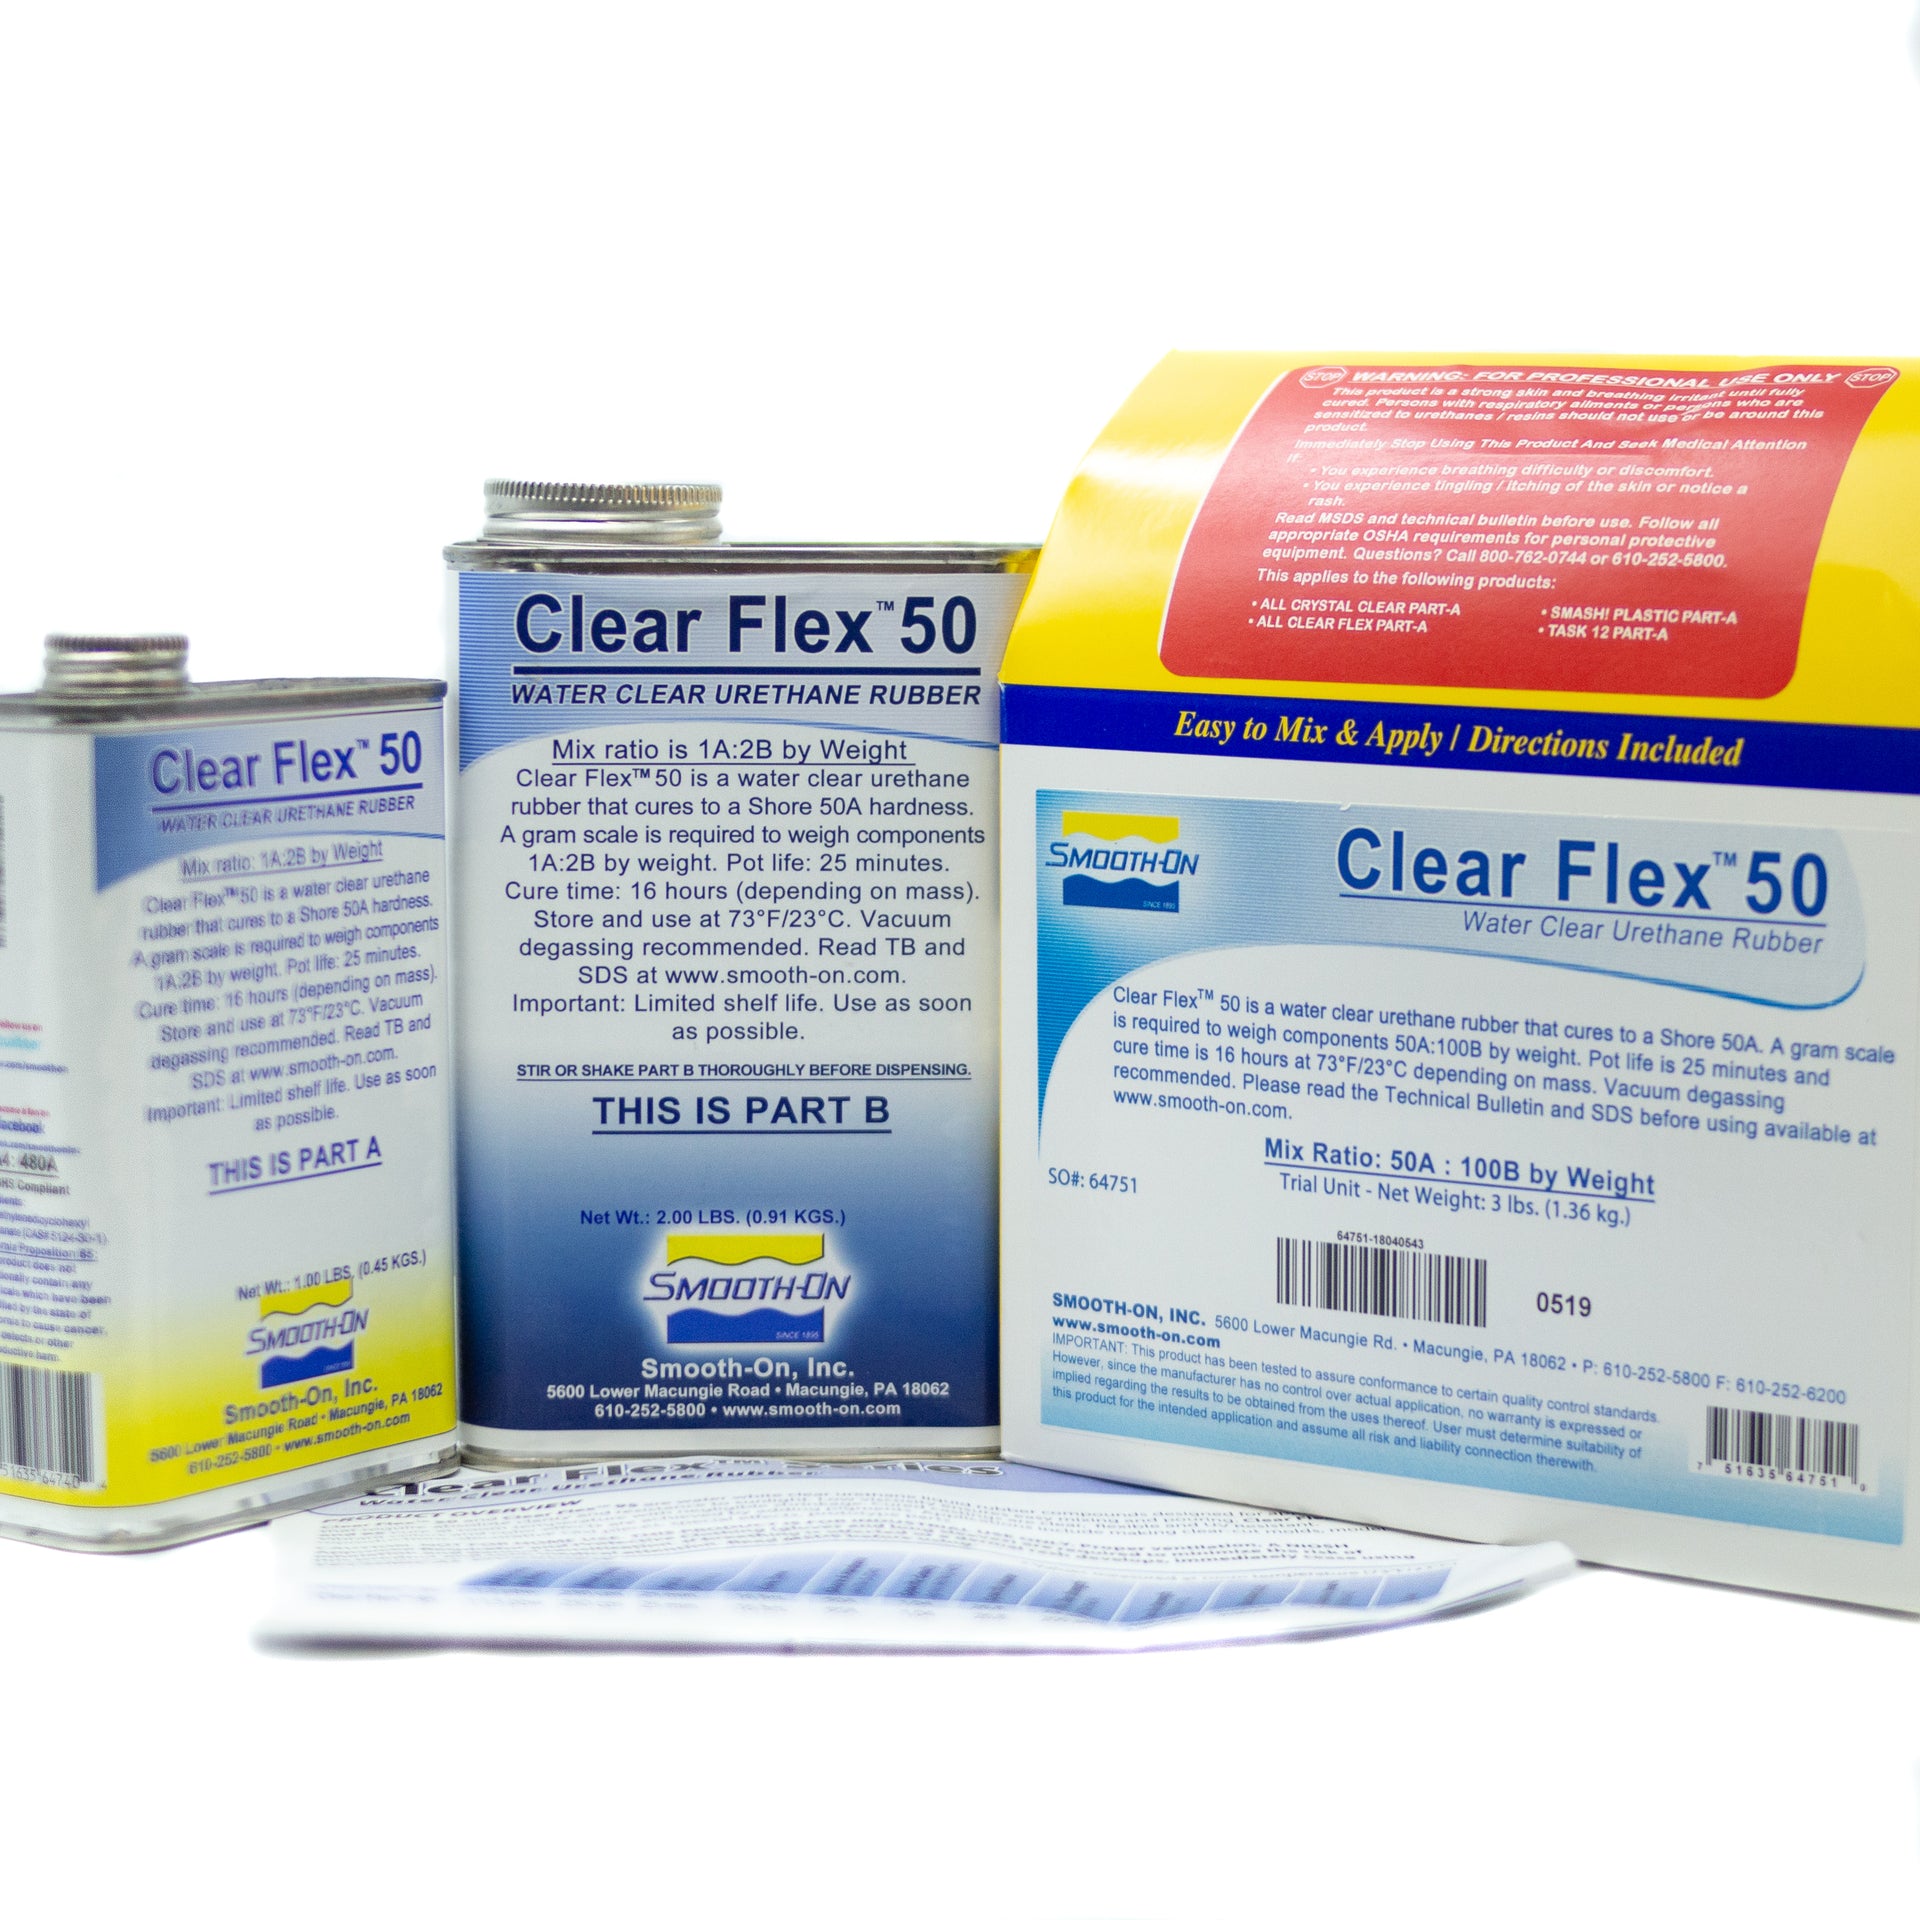 Clear Flex 50 - Trial Kit 1.36kg, resin- Lumin's Workshop